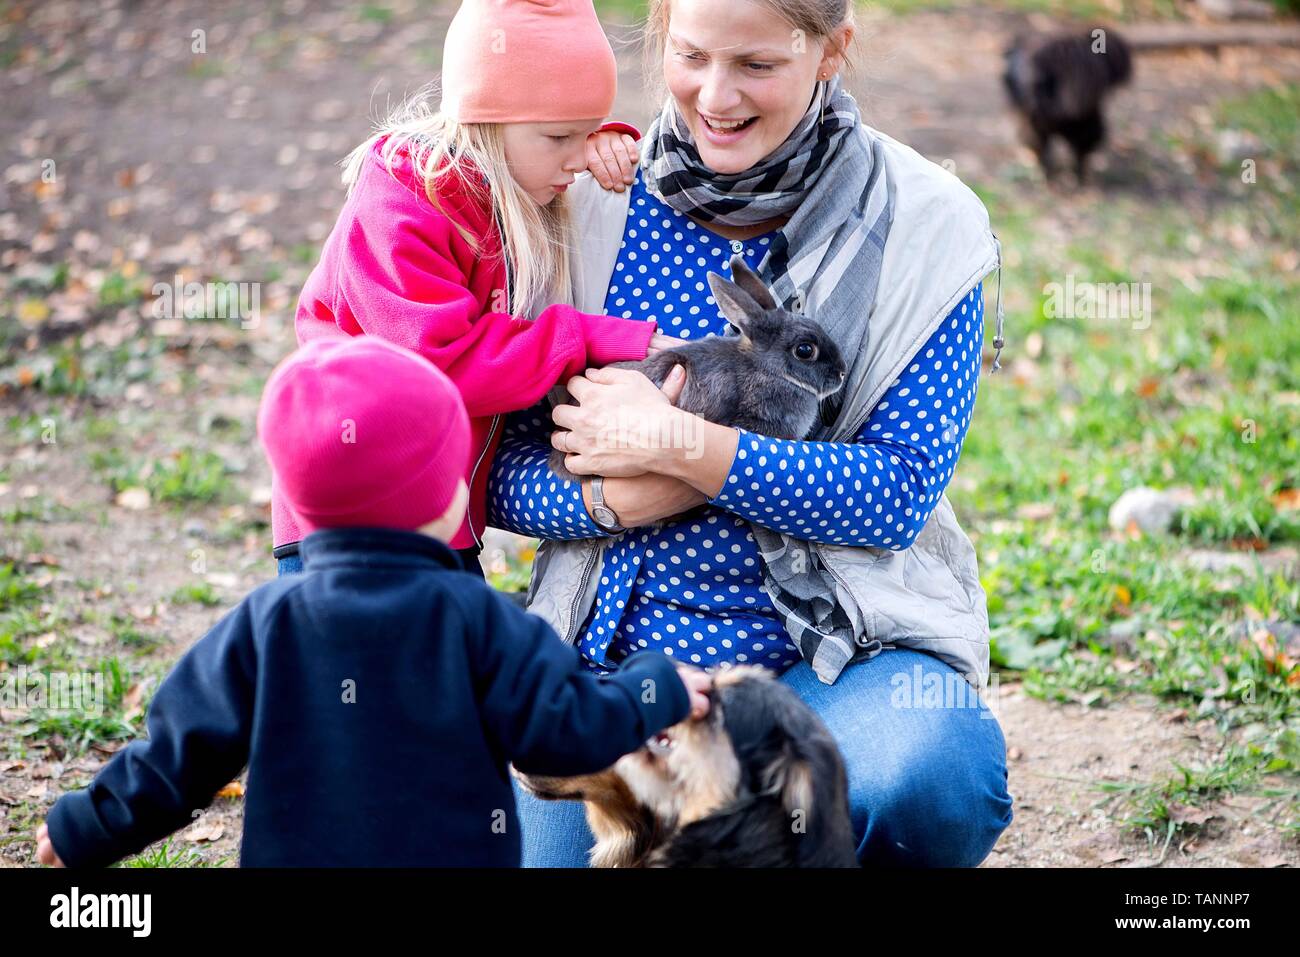 La mamma gioca con i suoi bambini e alimenta gli animali domestici nel cortile della fattoria Foto Stock